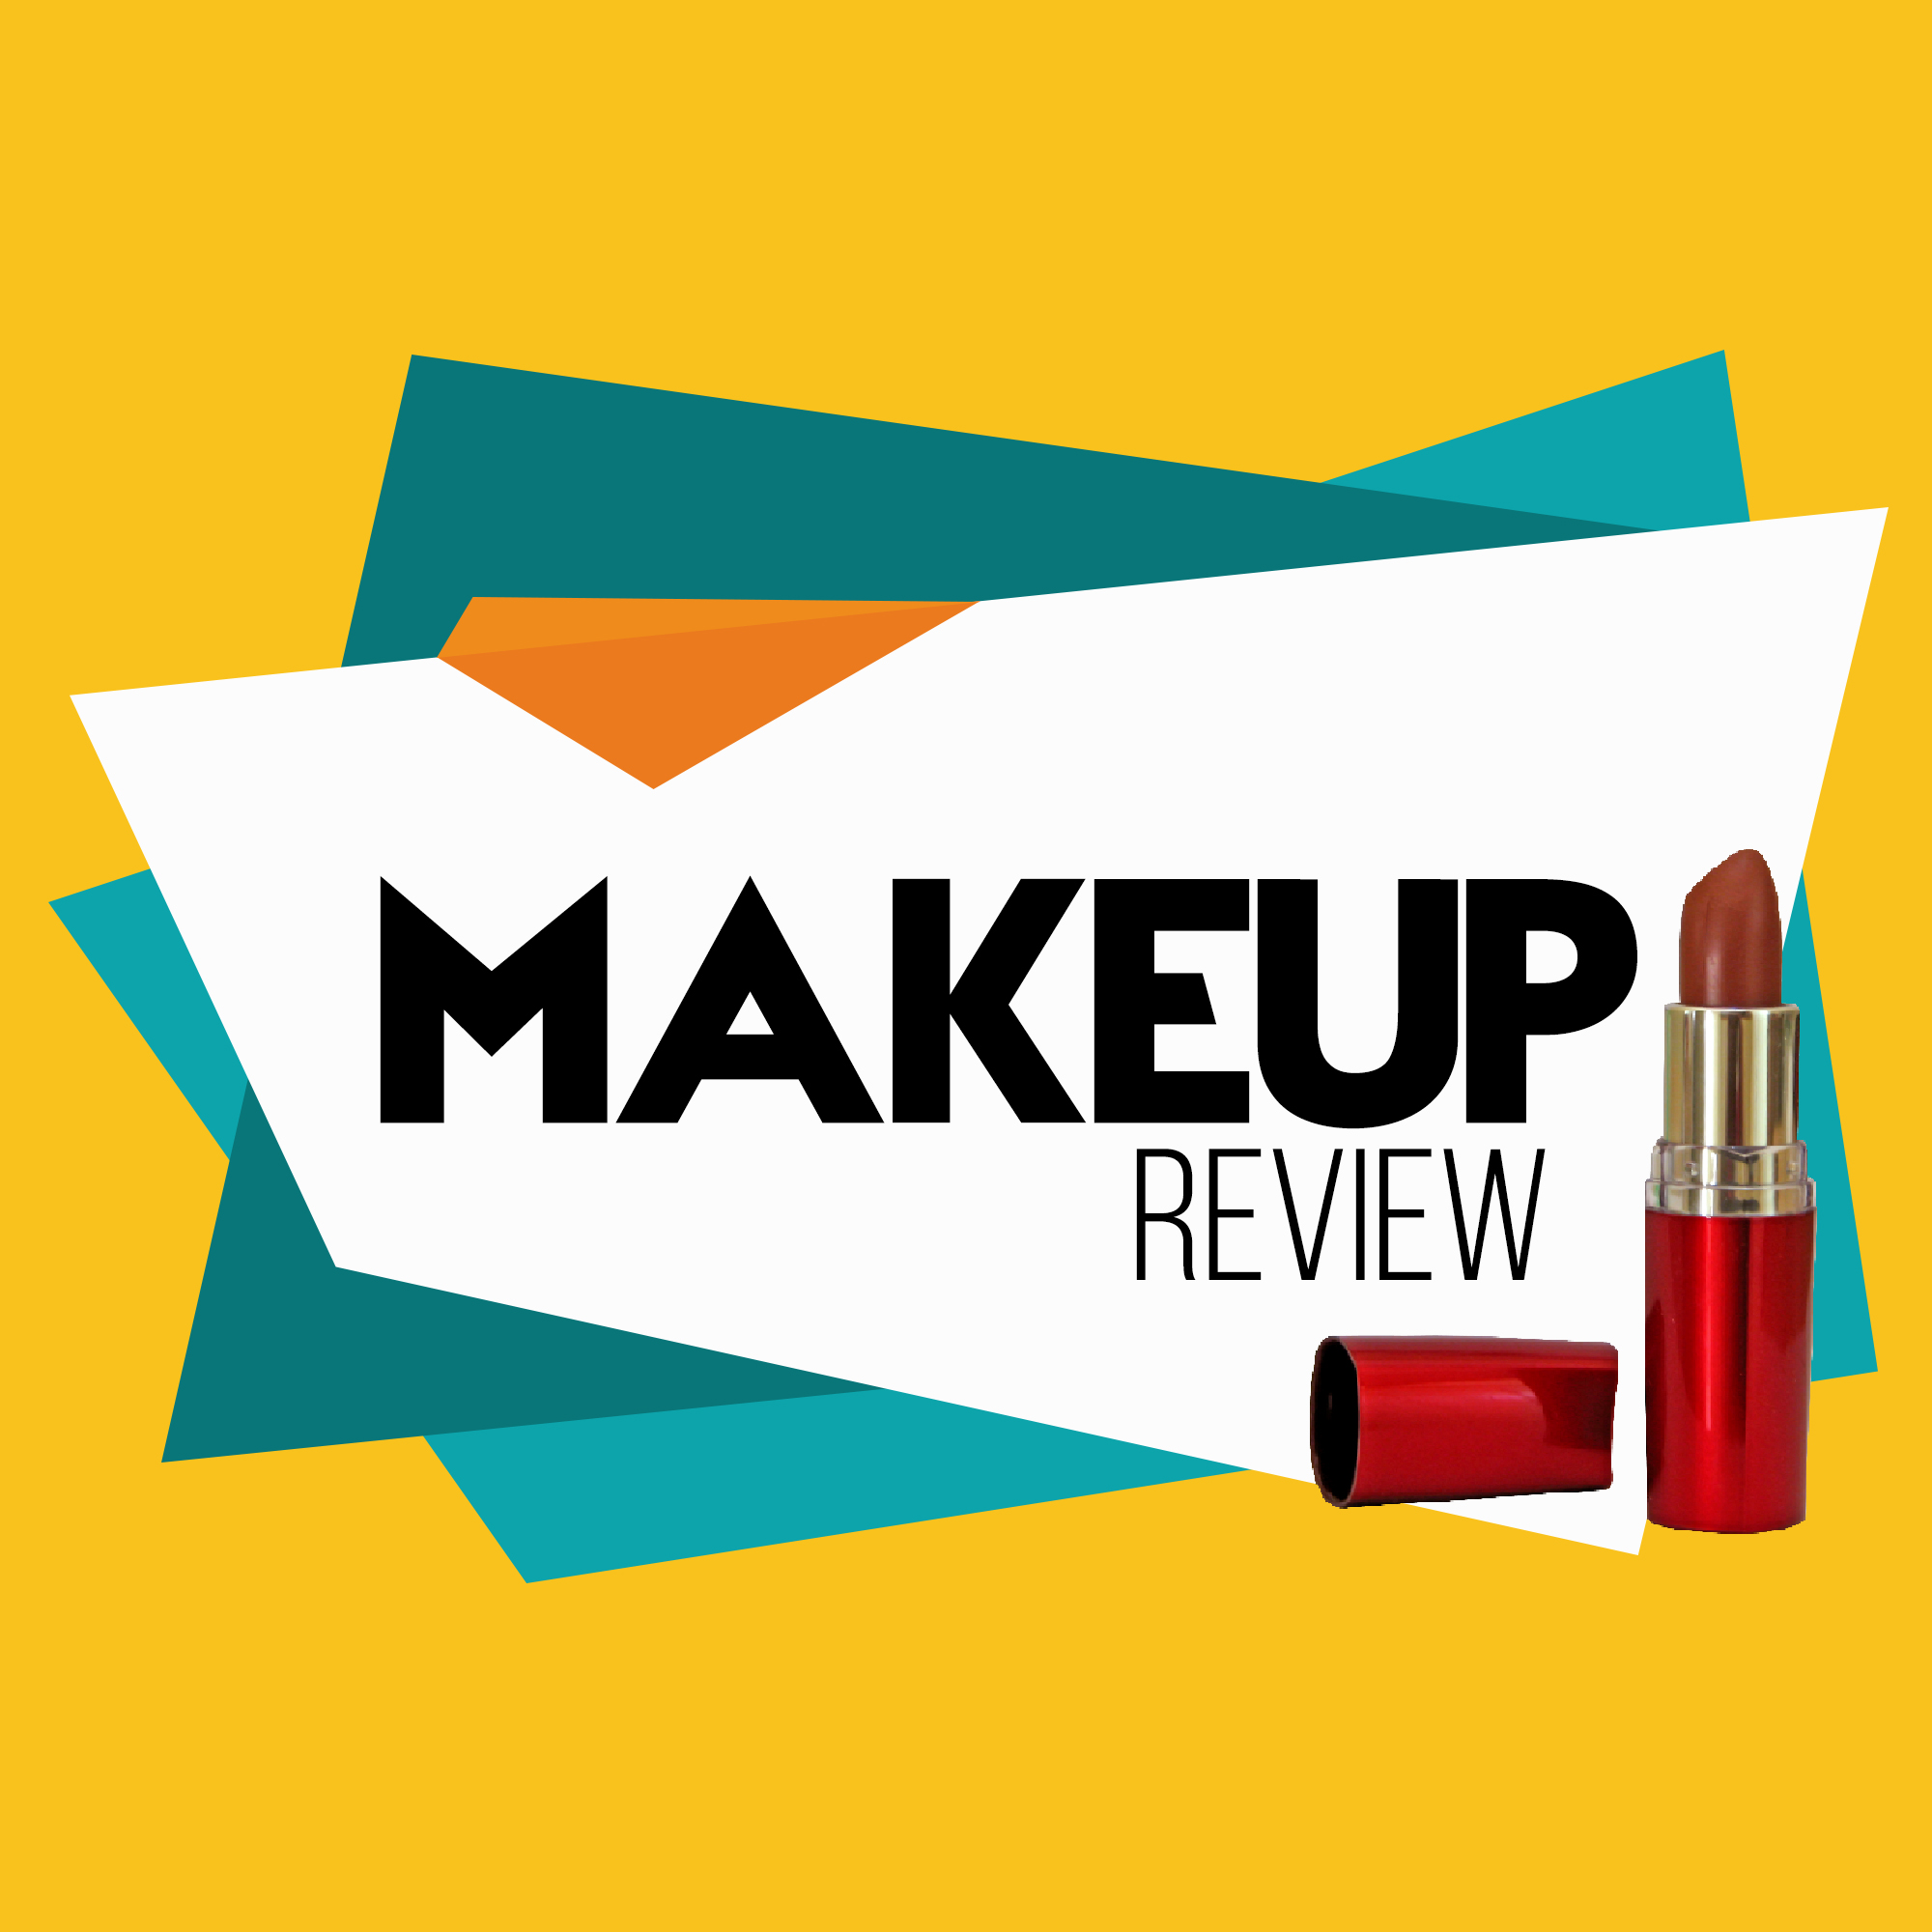 Makeup review